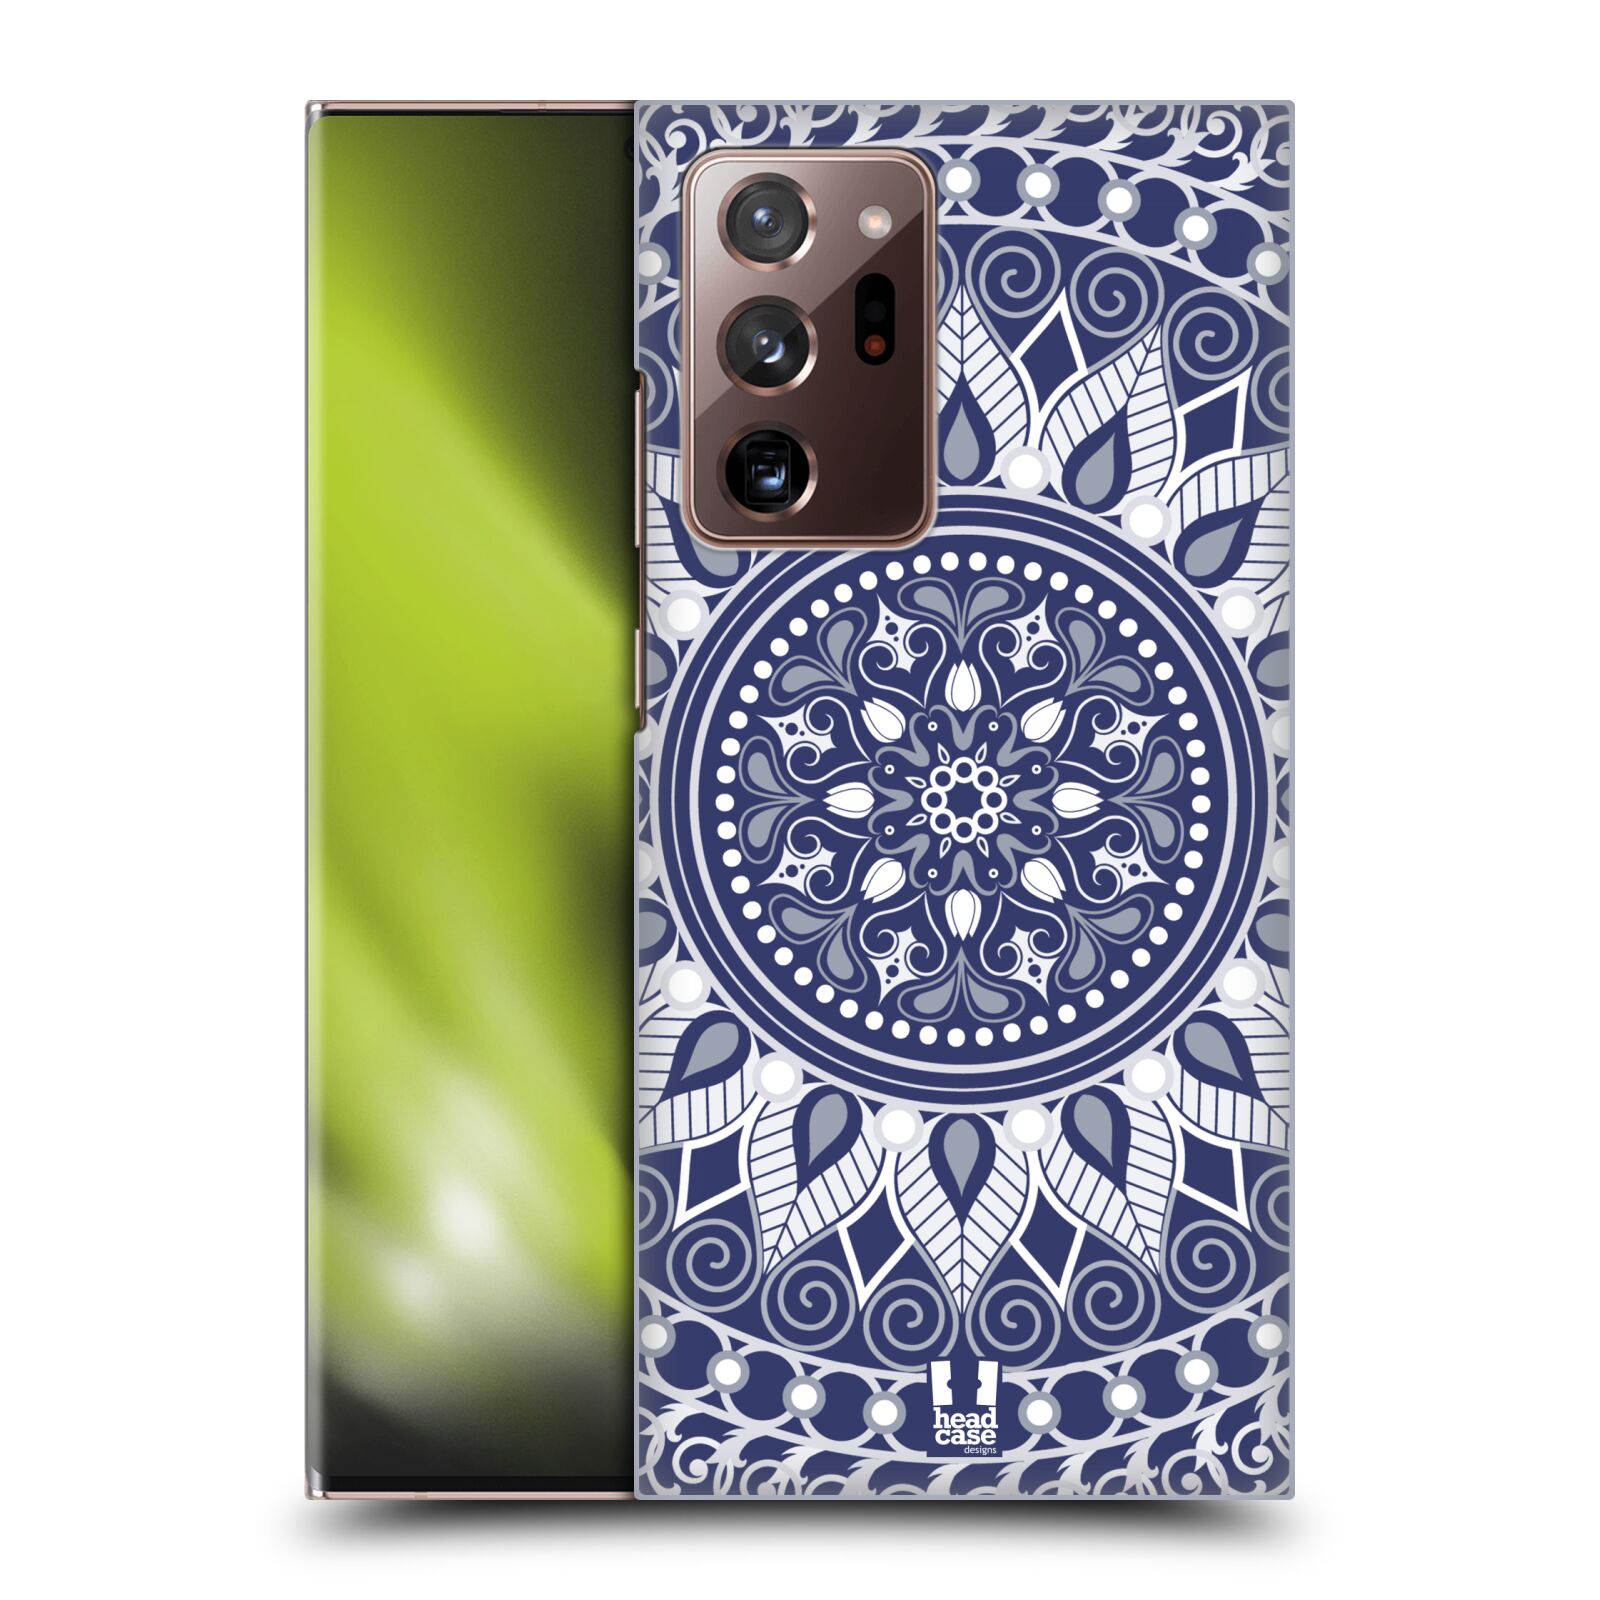 Plastový obal HEAD CASE na mobil Samsung Galaxy Note 20 ULTRA vzor Indie Mandala slunce barevný motiv MODRÁ